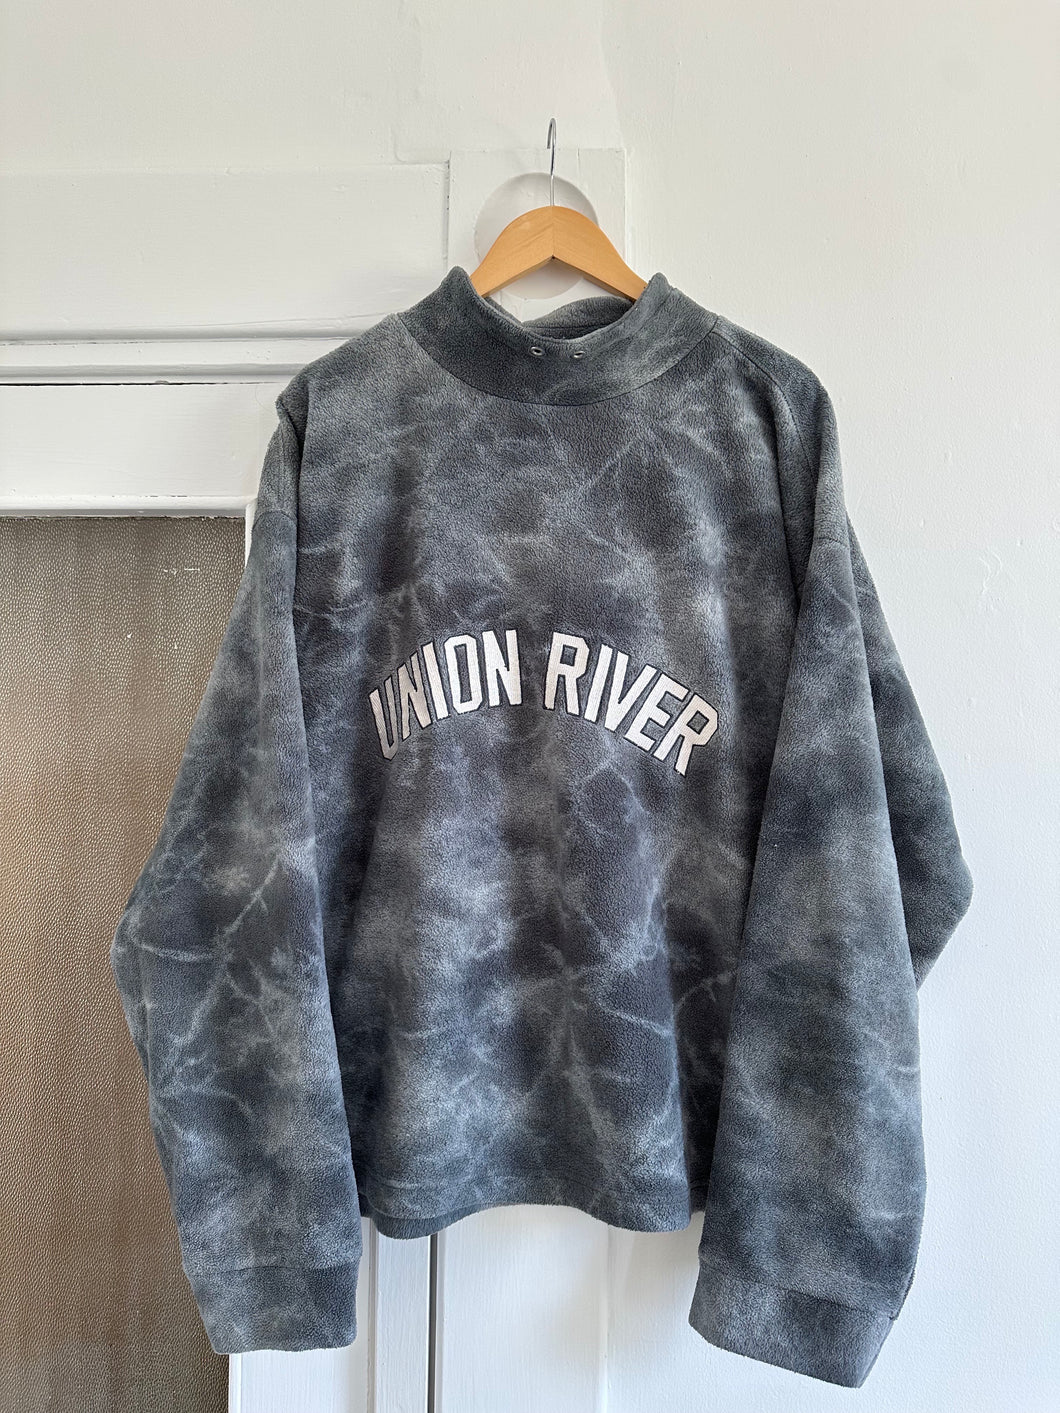 union river fleece sweater